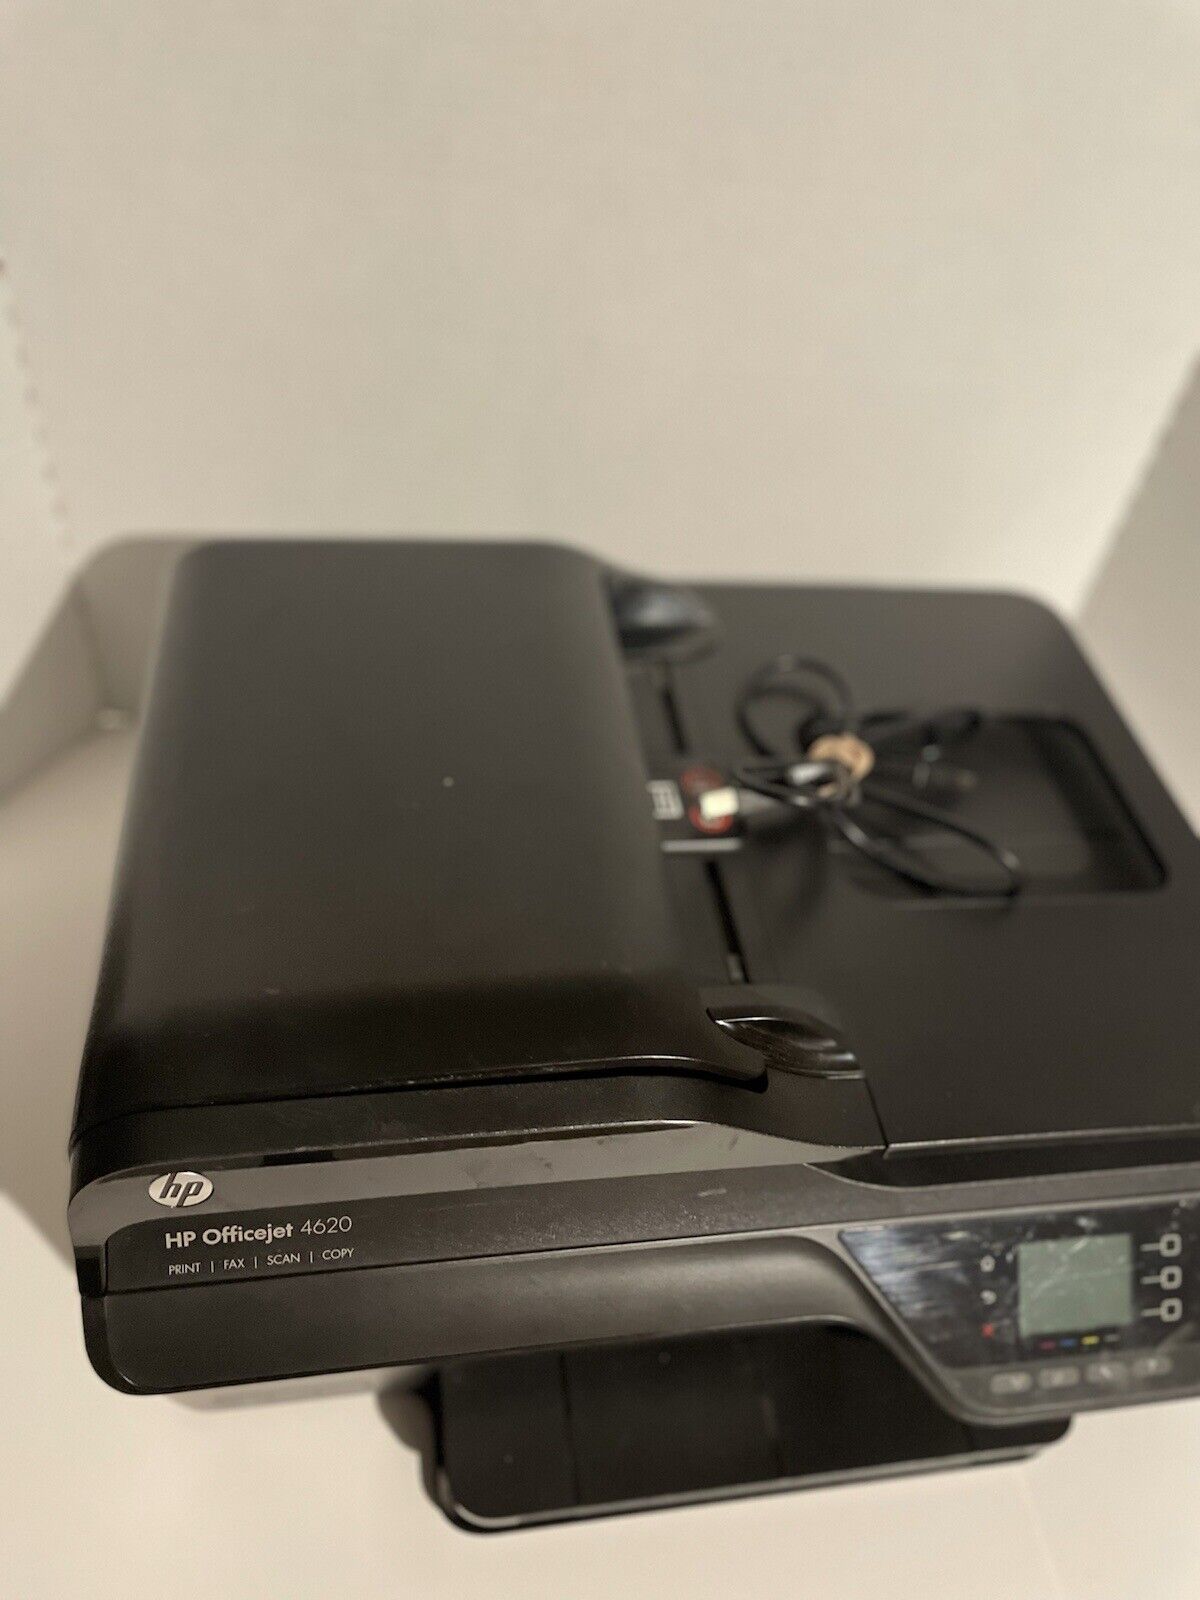 HP Officejet 4620 All-In-One Inkjet Printer w/ USB Cord - NEEDS INK - WYPRZEDAŻ, wybuchowy zakup